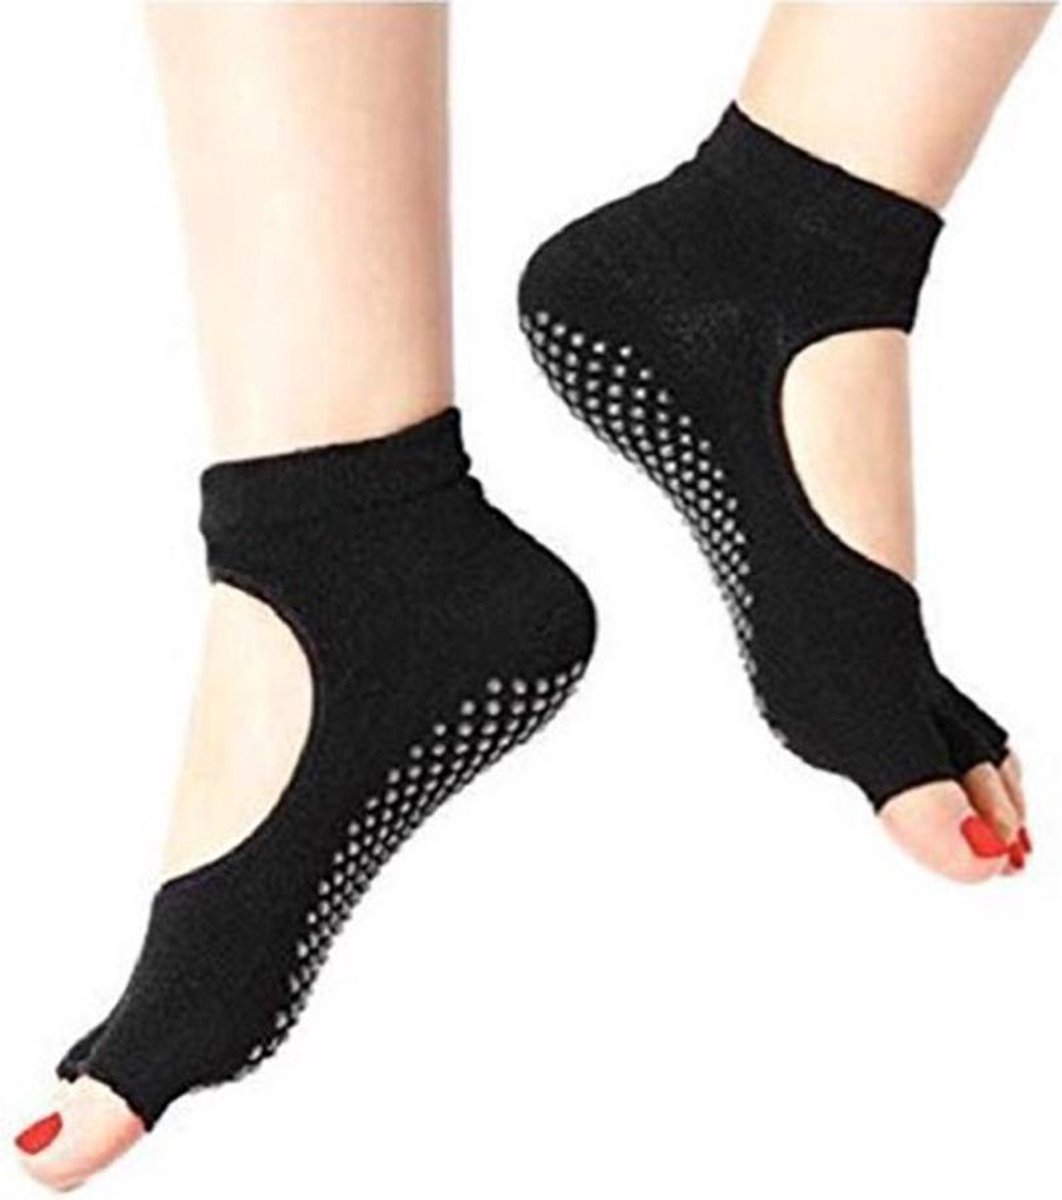 Yogasokken - Antislip sokken - Ballerina - Zwart patroon - meerdere kleuren verkrijgbaar - Yoga sokken